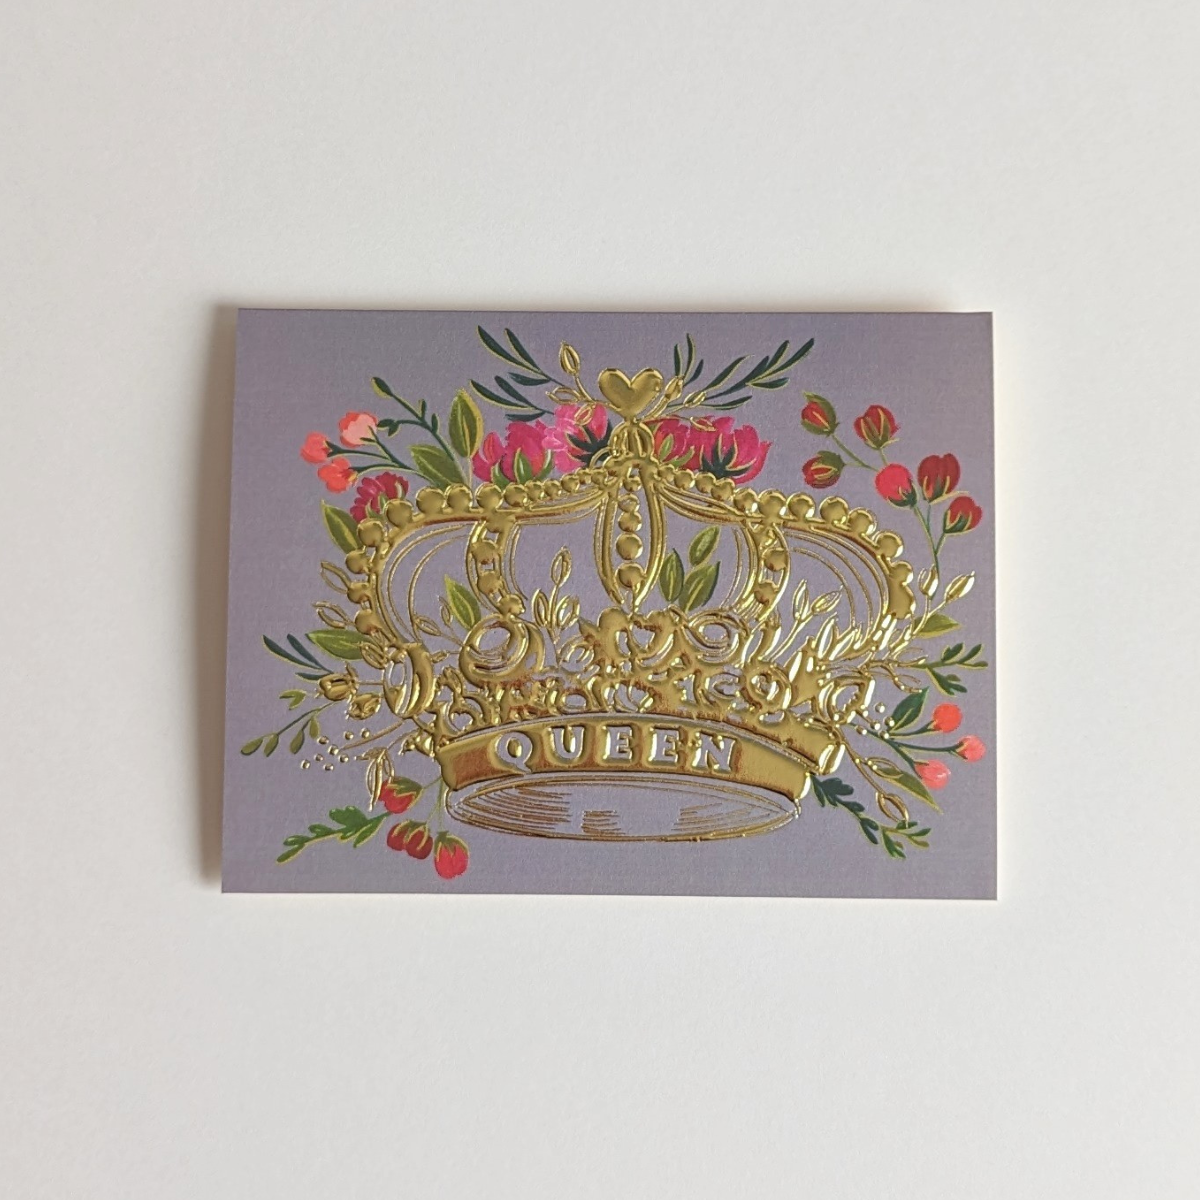 Une couronne entourée de fleurs, symbolisant la grâce et la grandeur a été gaufrée à la feuille d’or pour la rendre encore plus luxueuse.